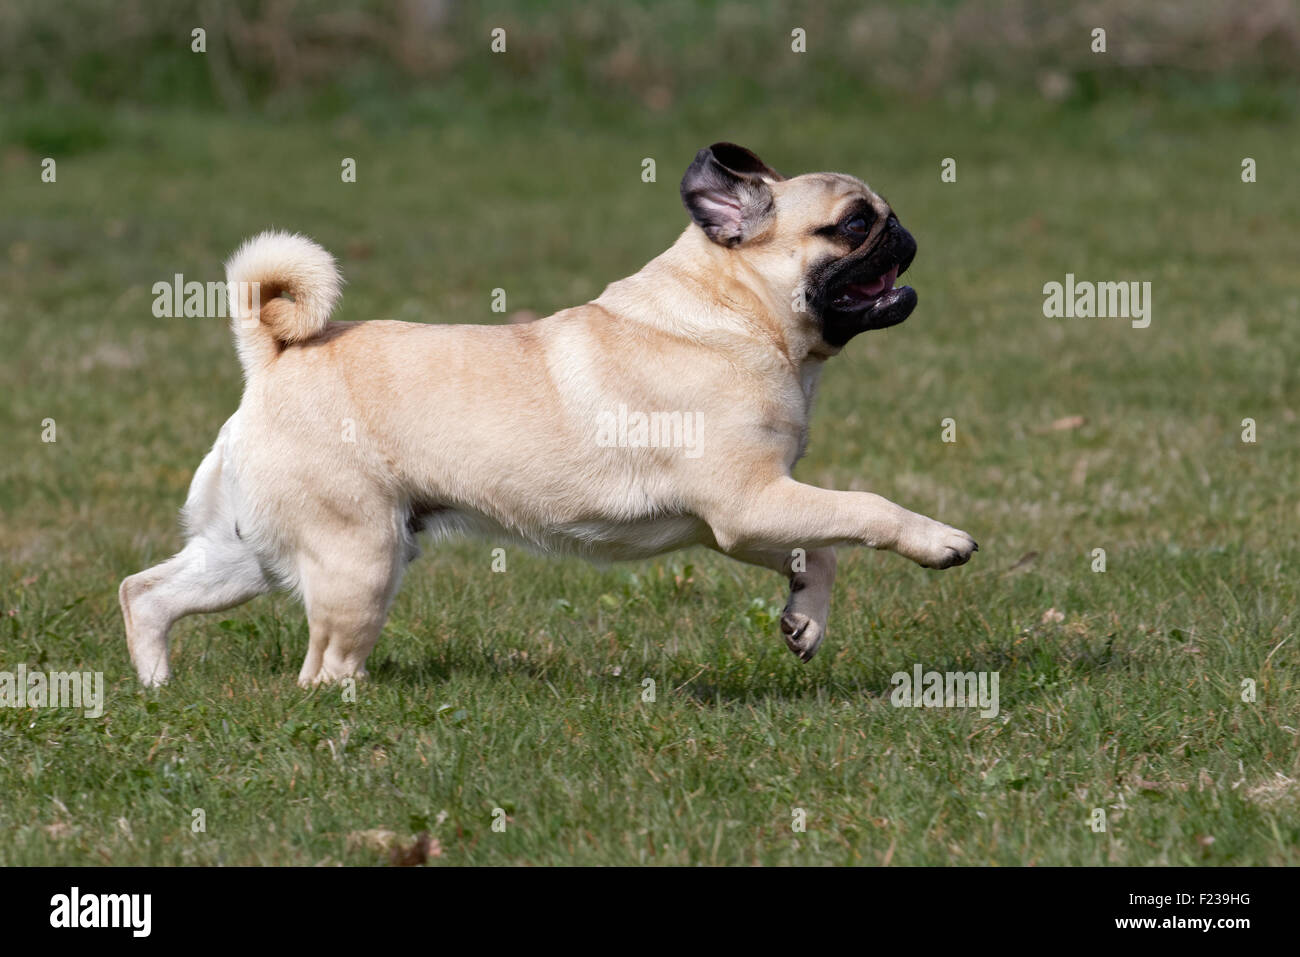 Running Pug Stock Photo